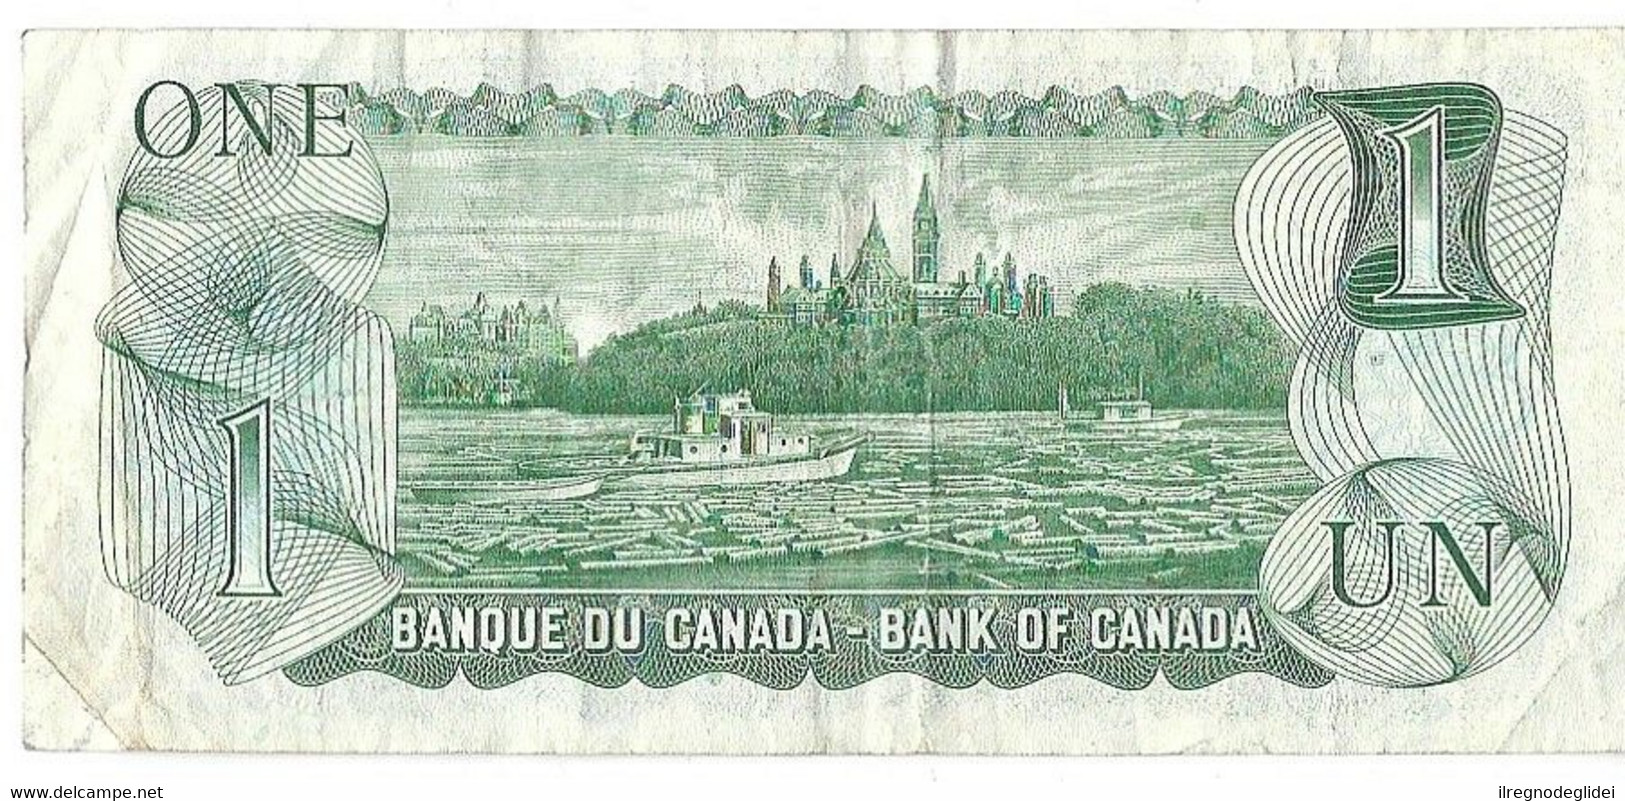 CANADA - 1 DOLLAR 1$ - WYSIWYG - N° SERIALE AFT8085457 - CARTAMONETA - PAPER MONEY - Canada